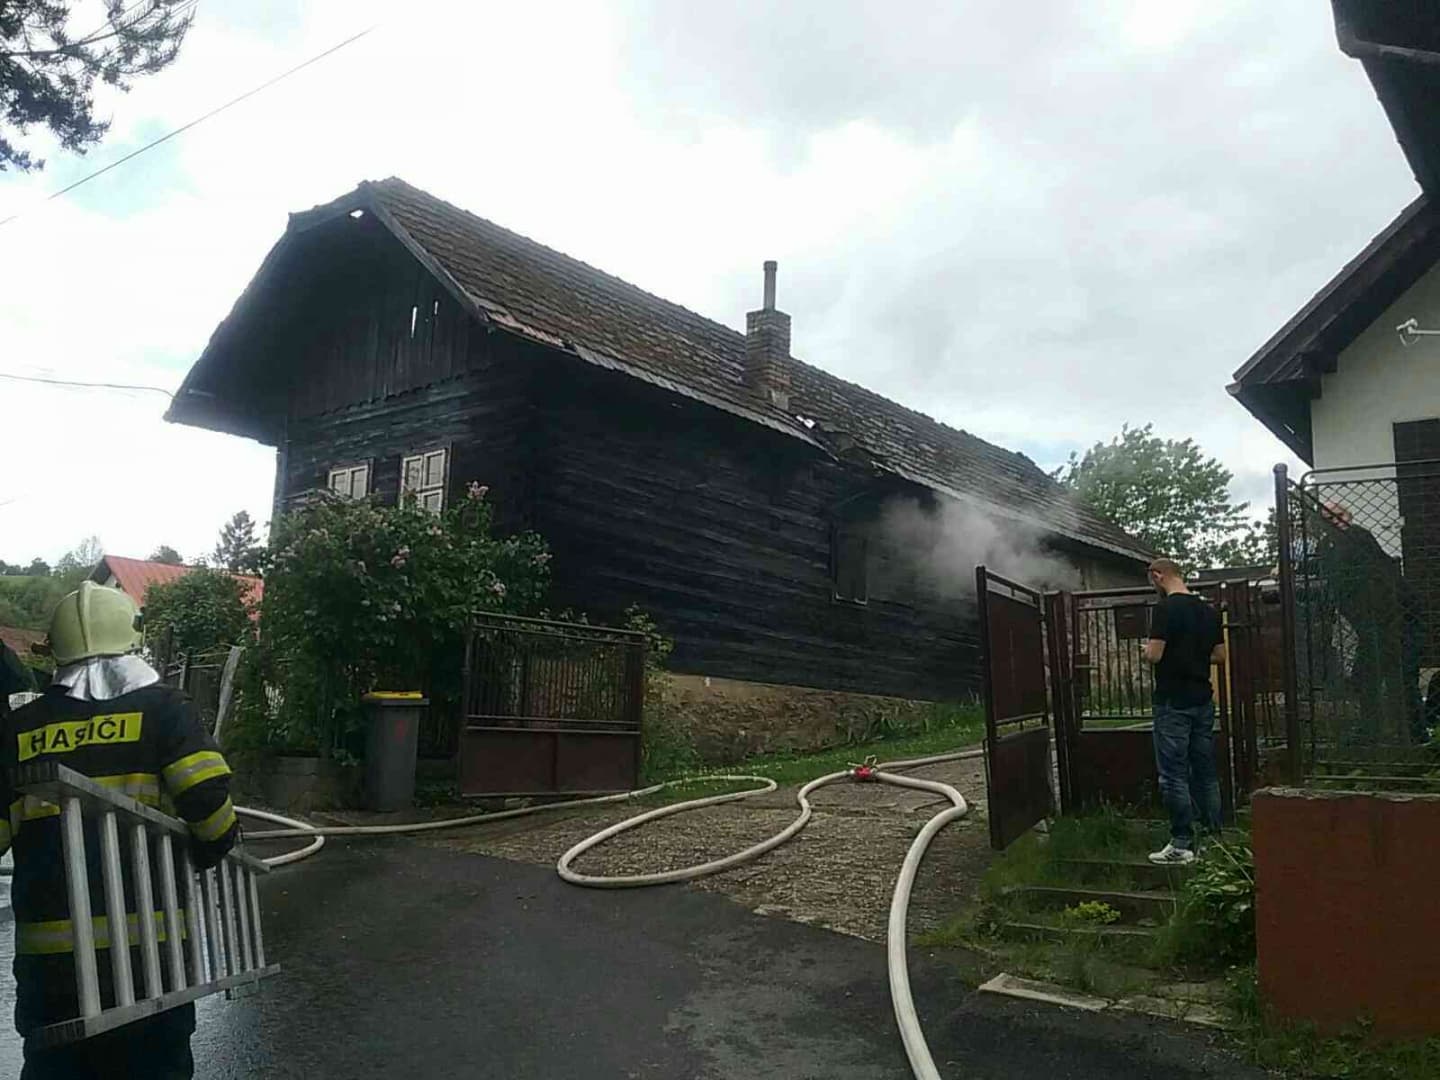 Tűz ütött ki a házban, megmentették a tűzoltók egy sérült életét